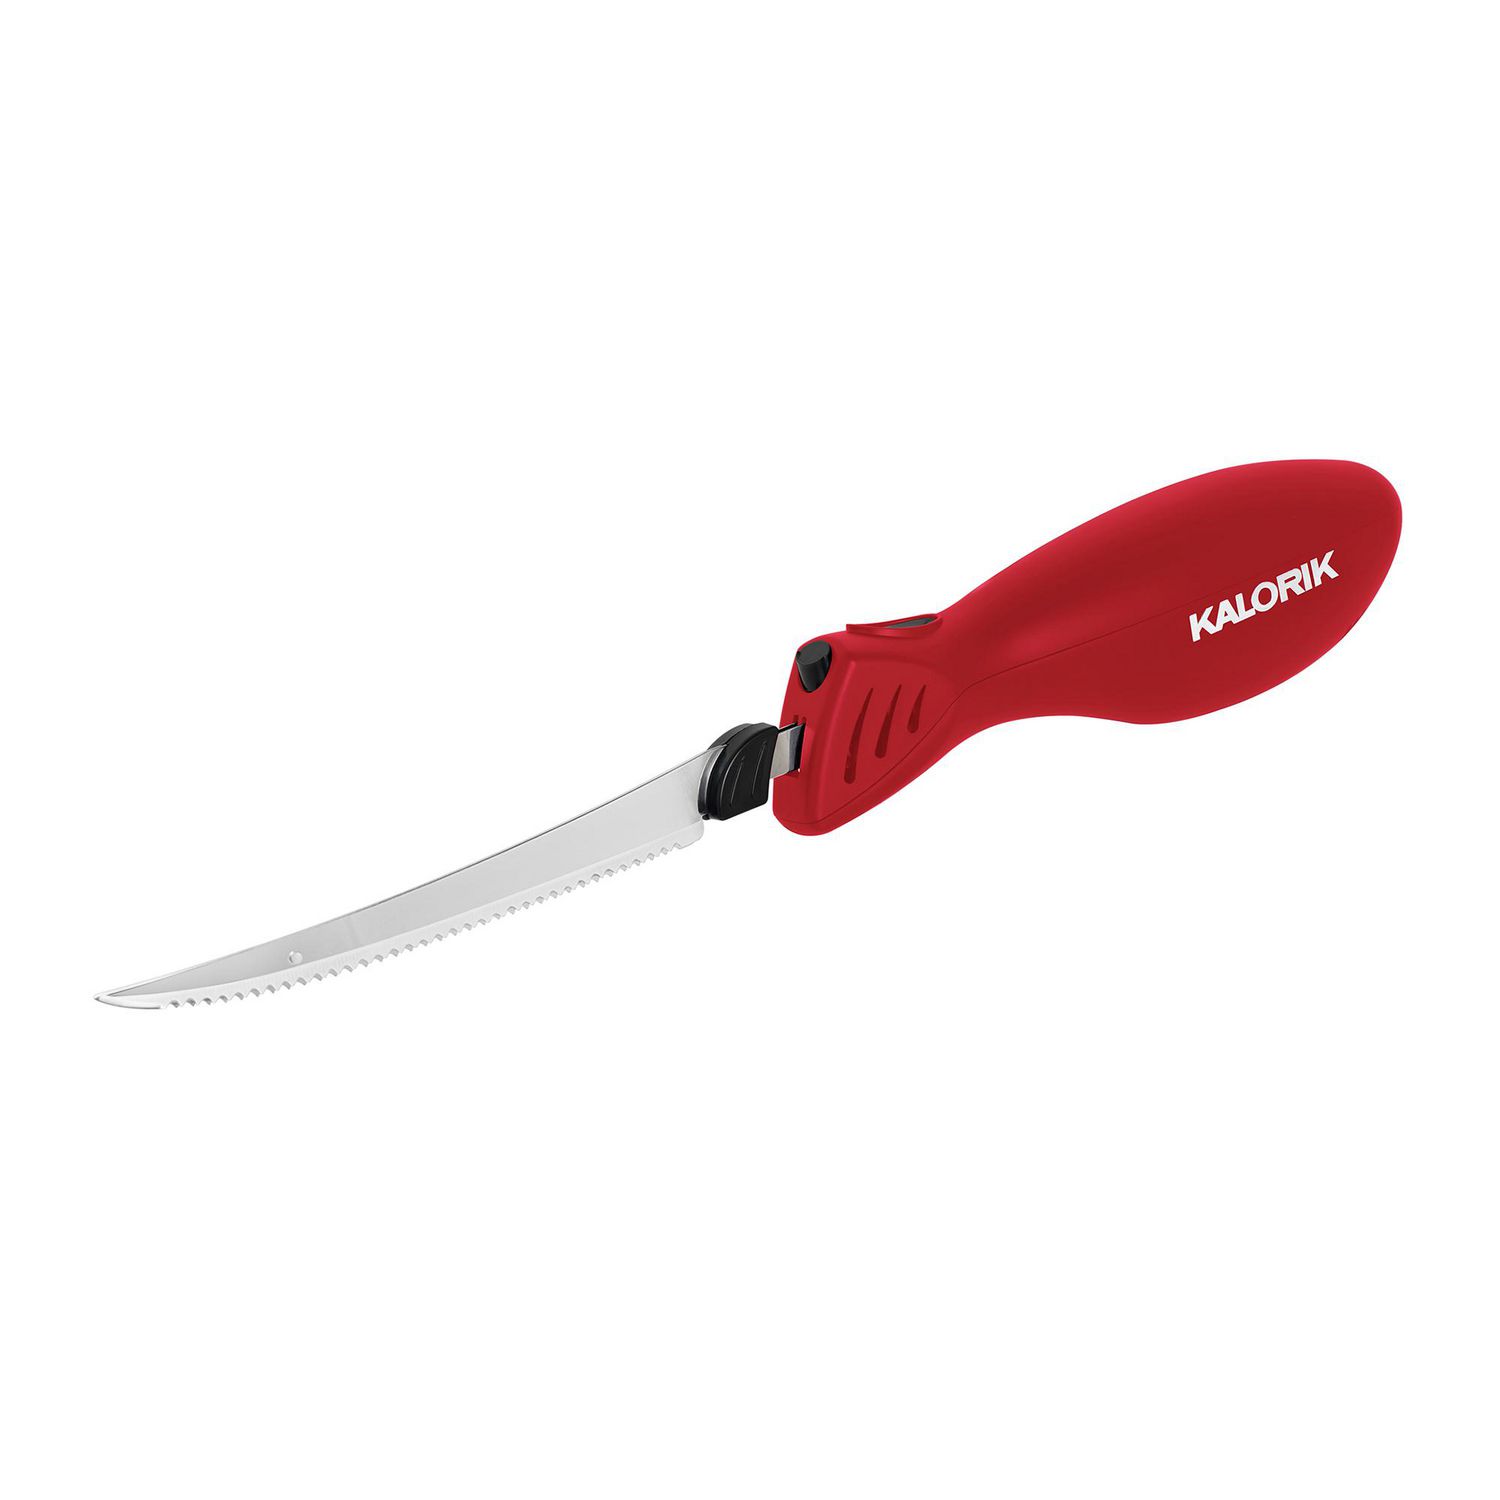 couteau électrique sans fil en gros pour garder nos couteaux bien aiguisés  - Alibaba.com